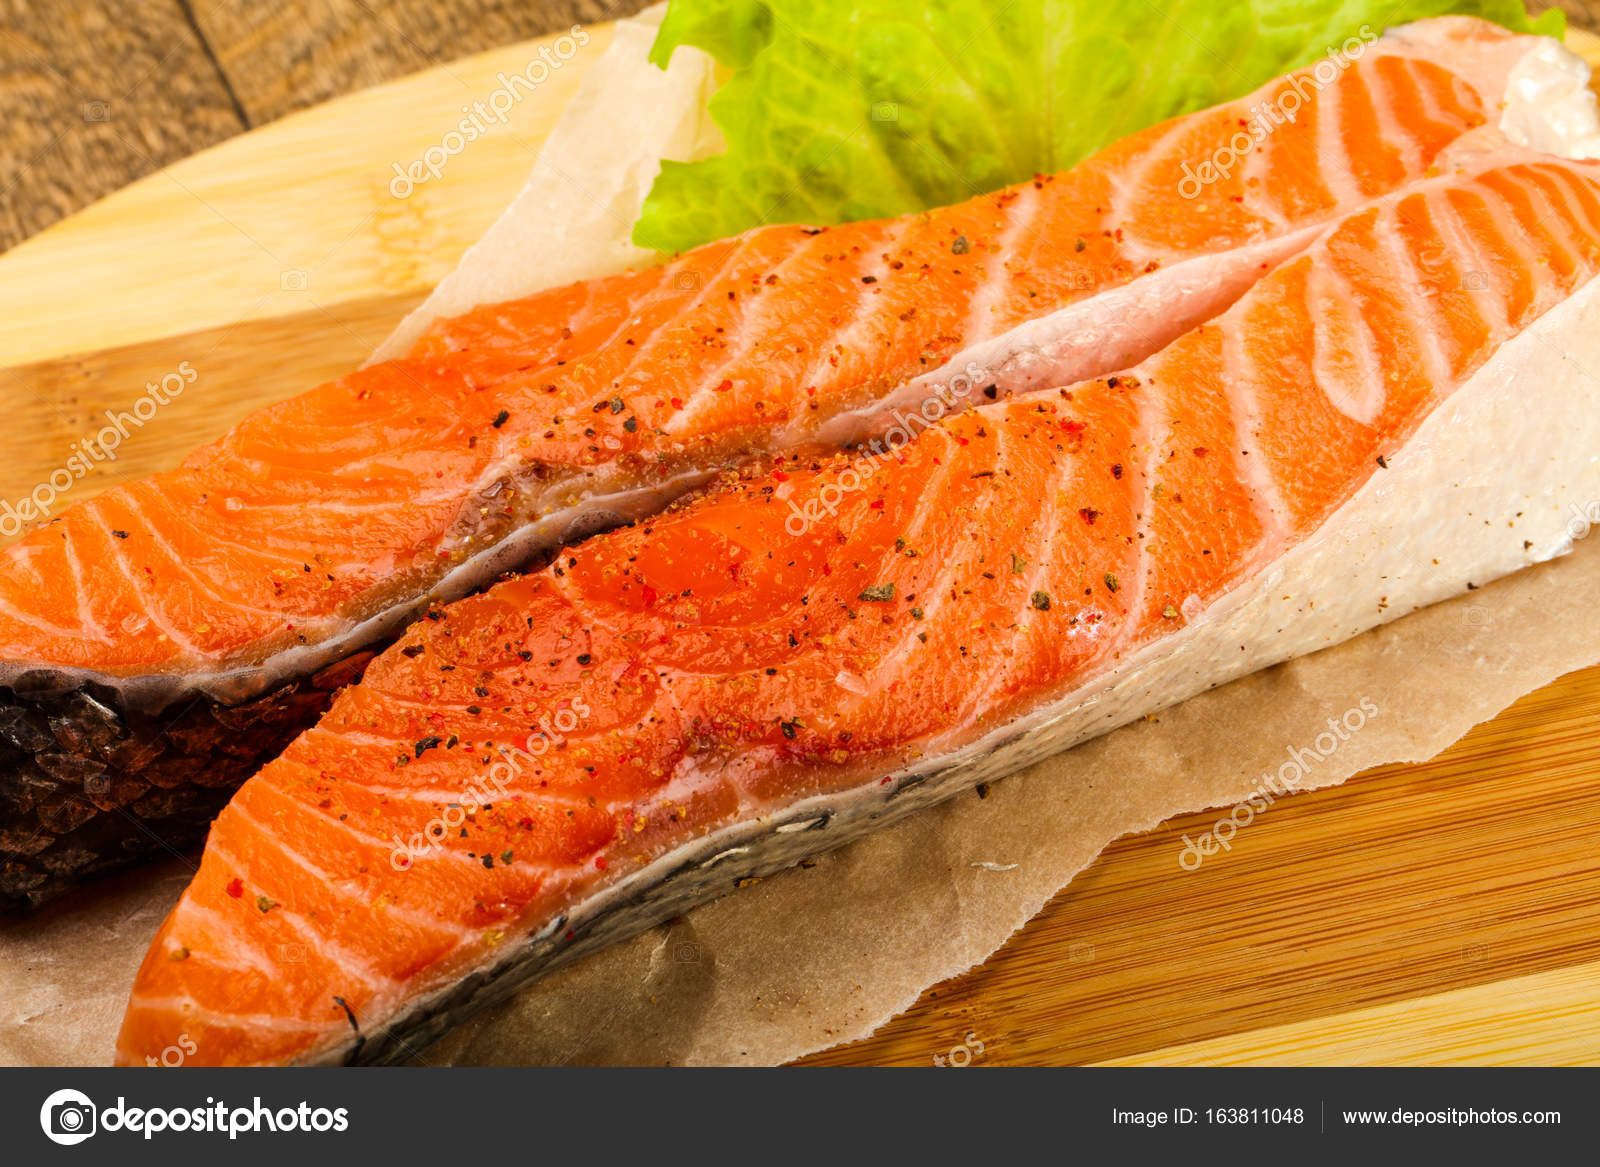 17 HQ Photos Cocinar Rodajas De Salmon - Cuando El Salmon Es El Protagonista Recetas